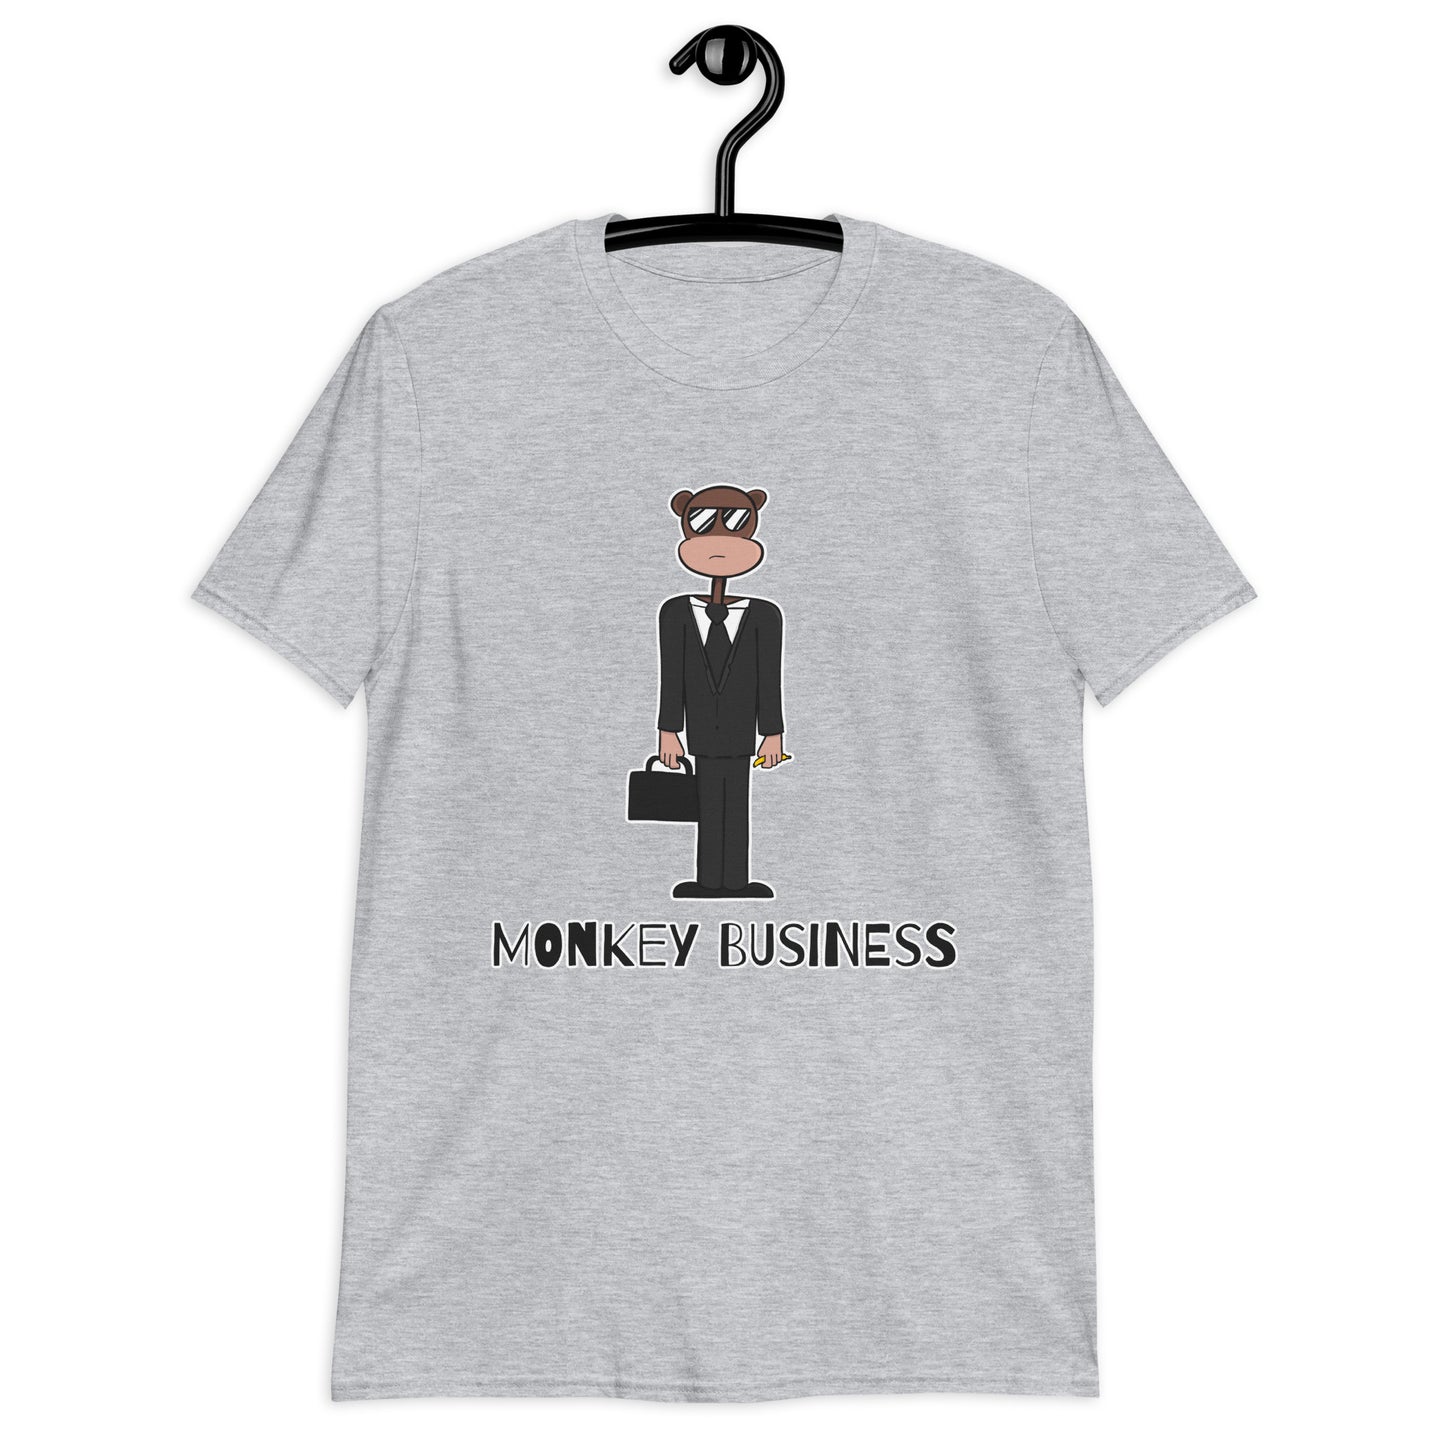 “Monkey Business” Short-Sleeve Unisex T-Shirt